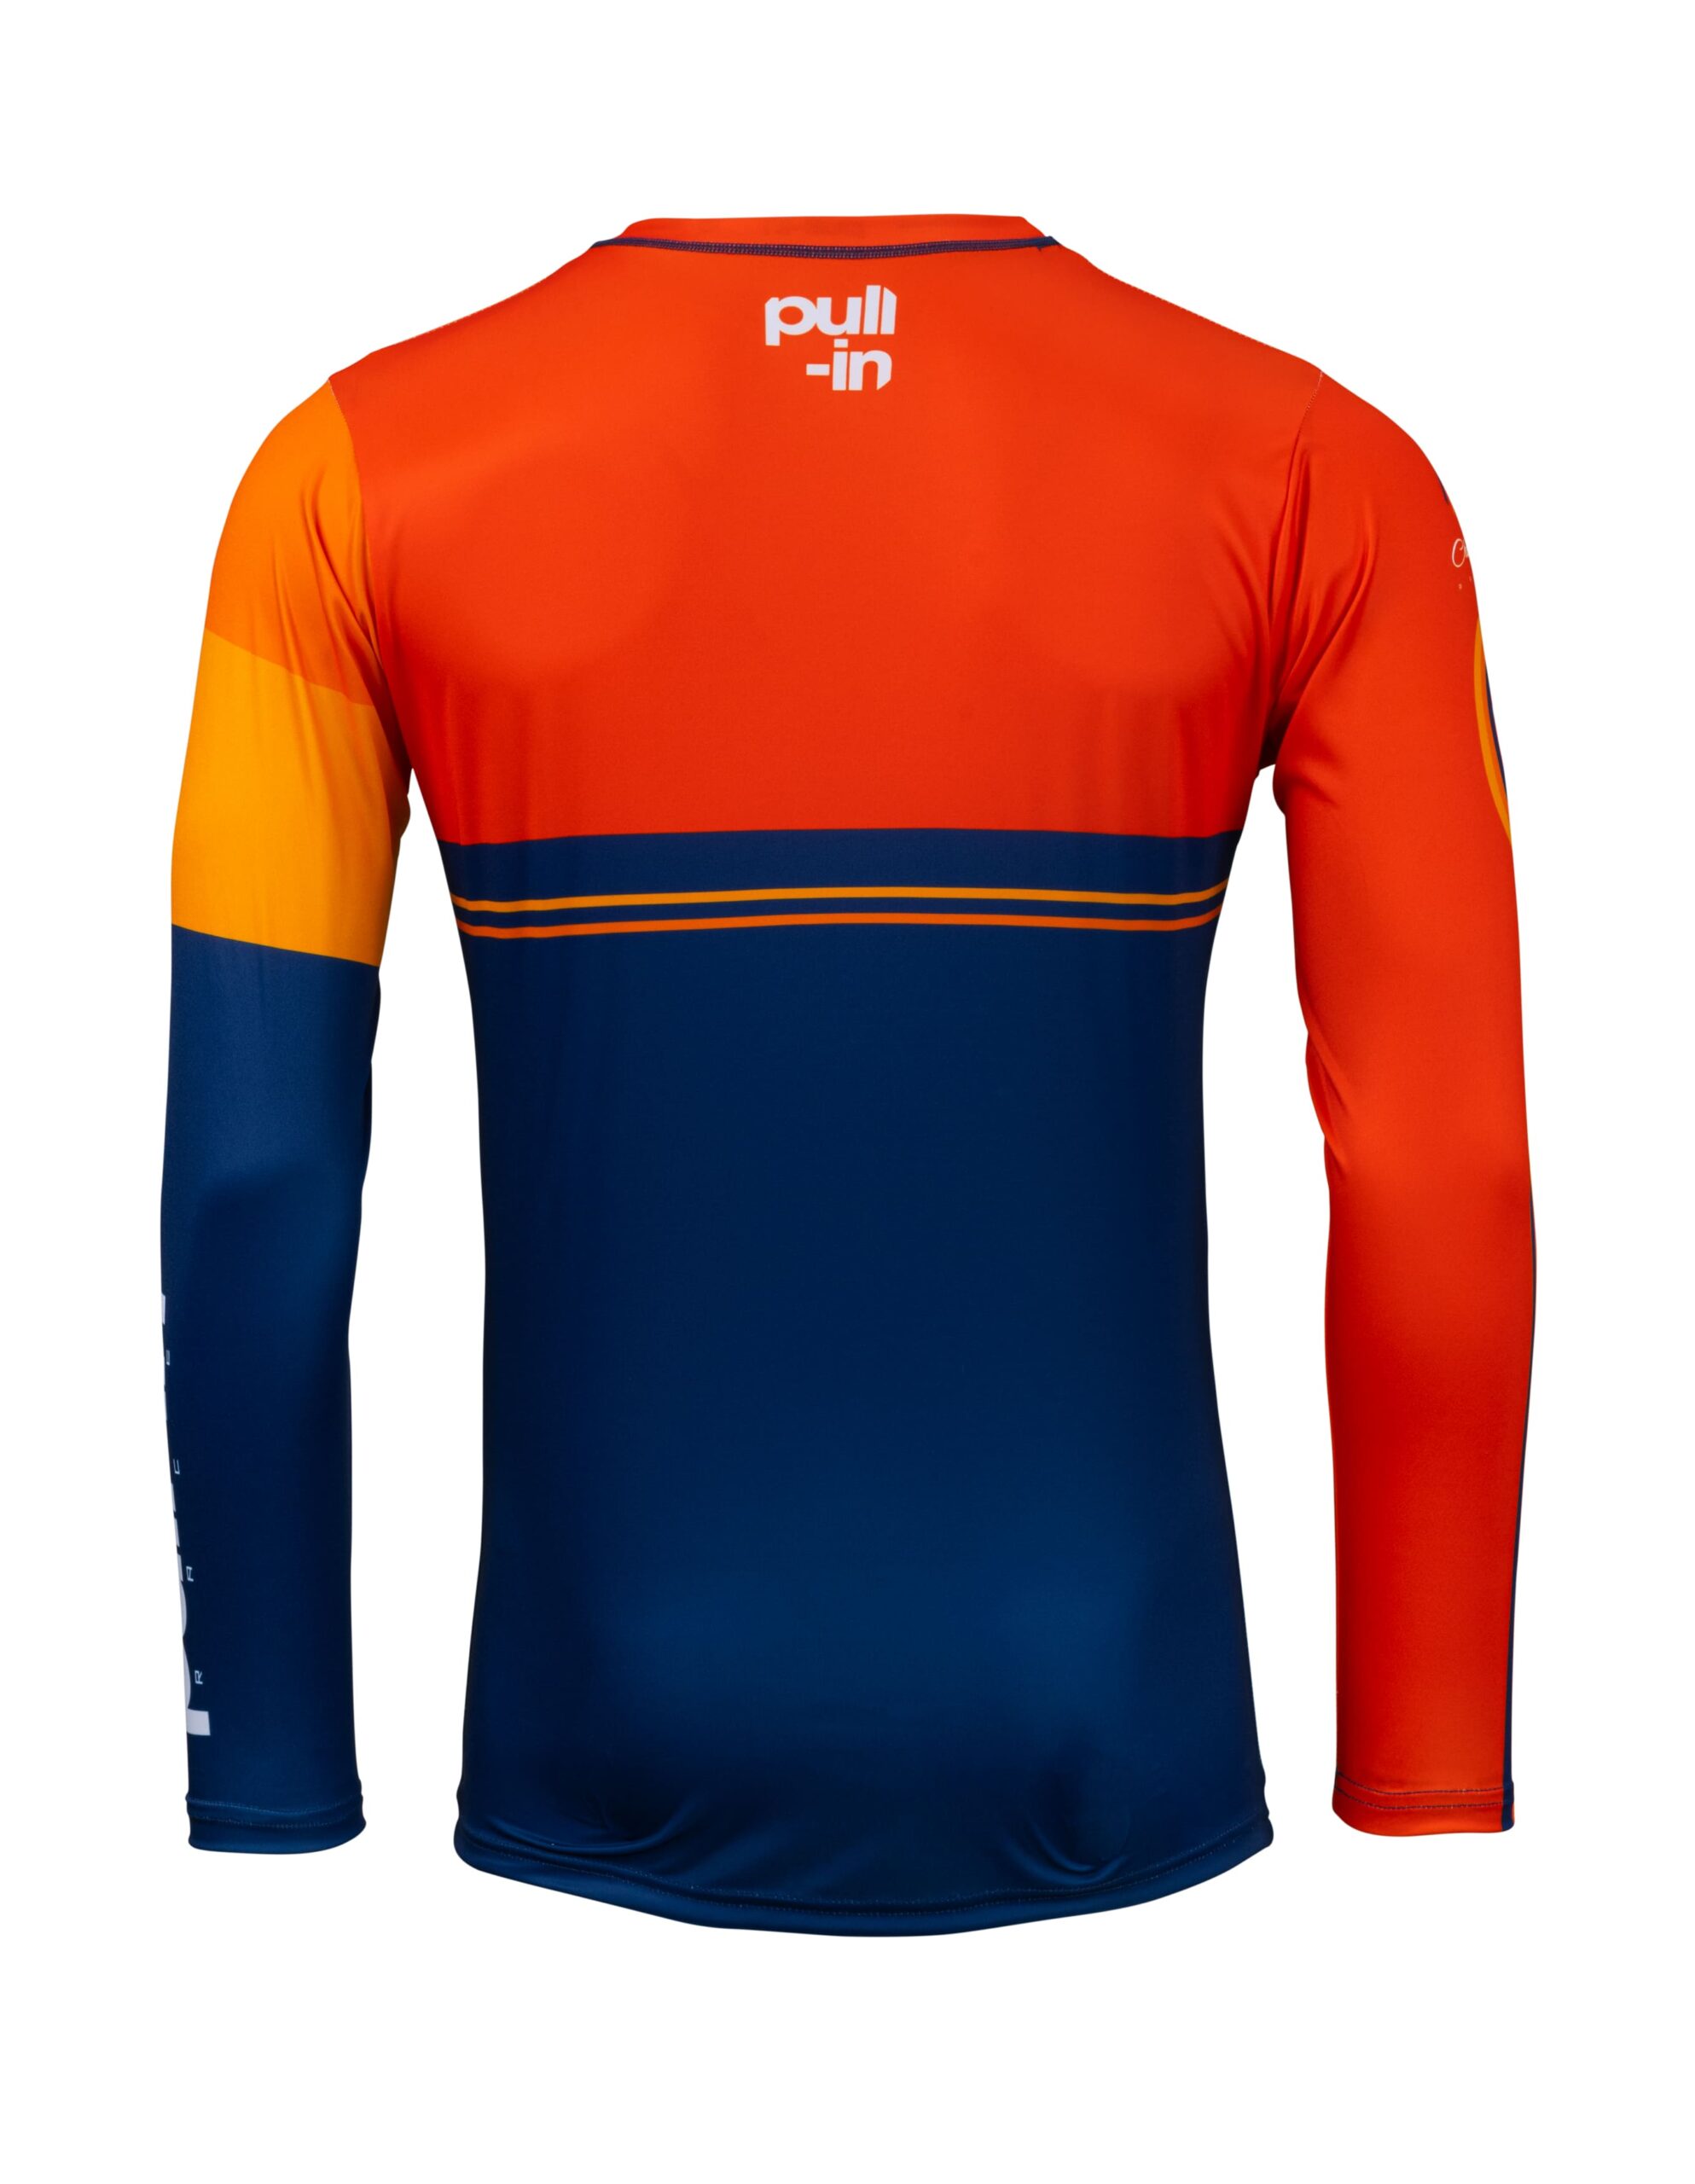 maillot_motocross_pullin_race_orange_navy